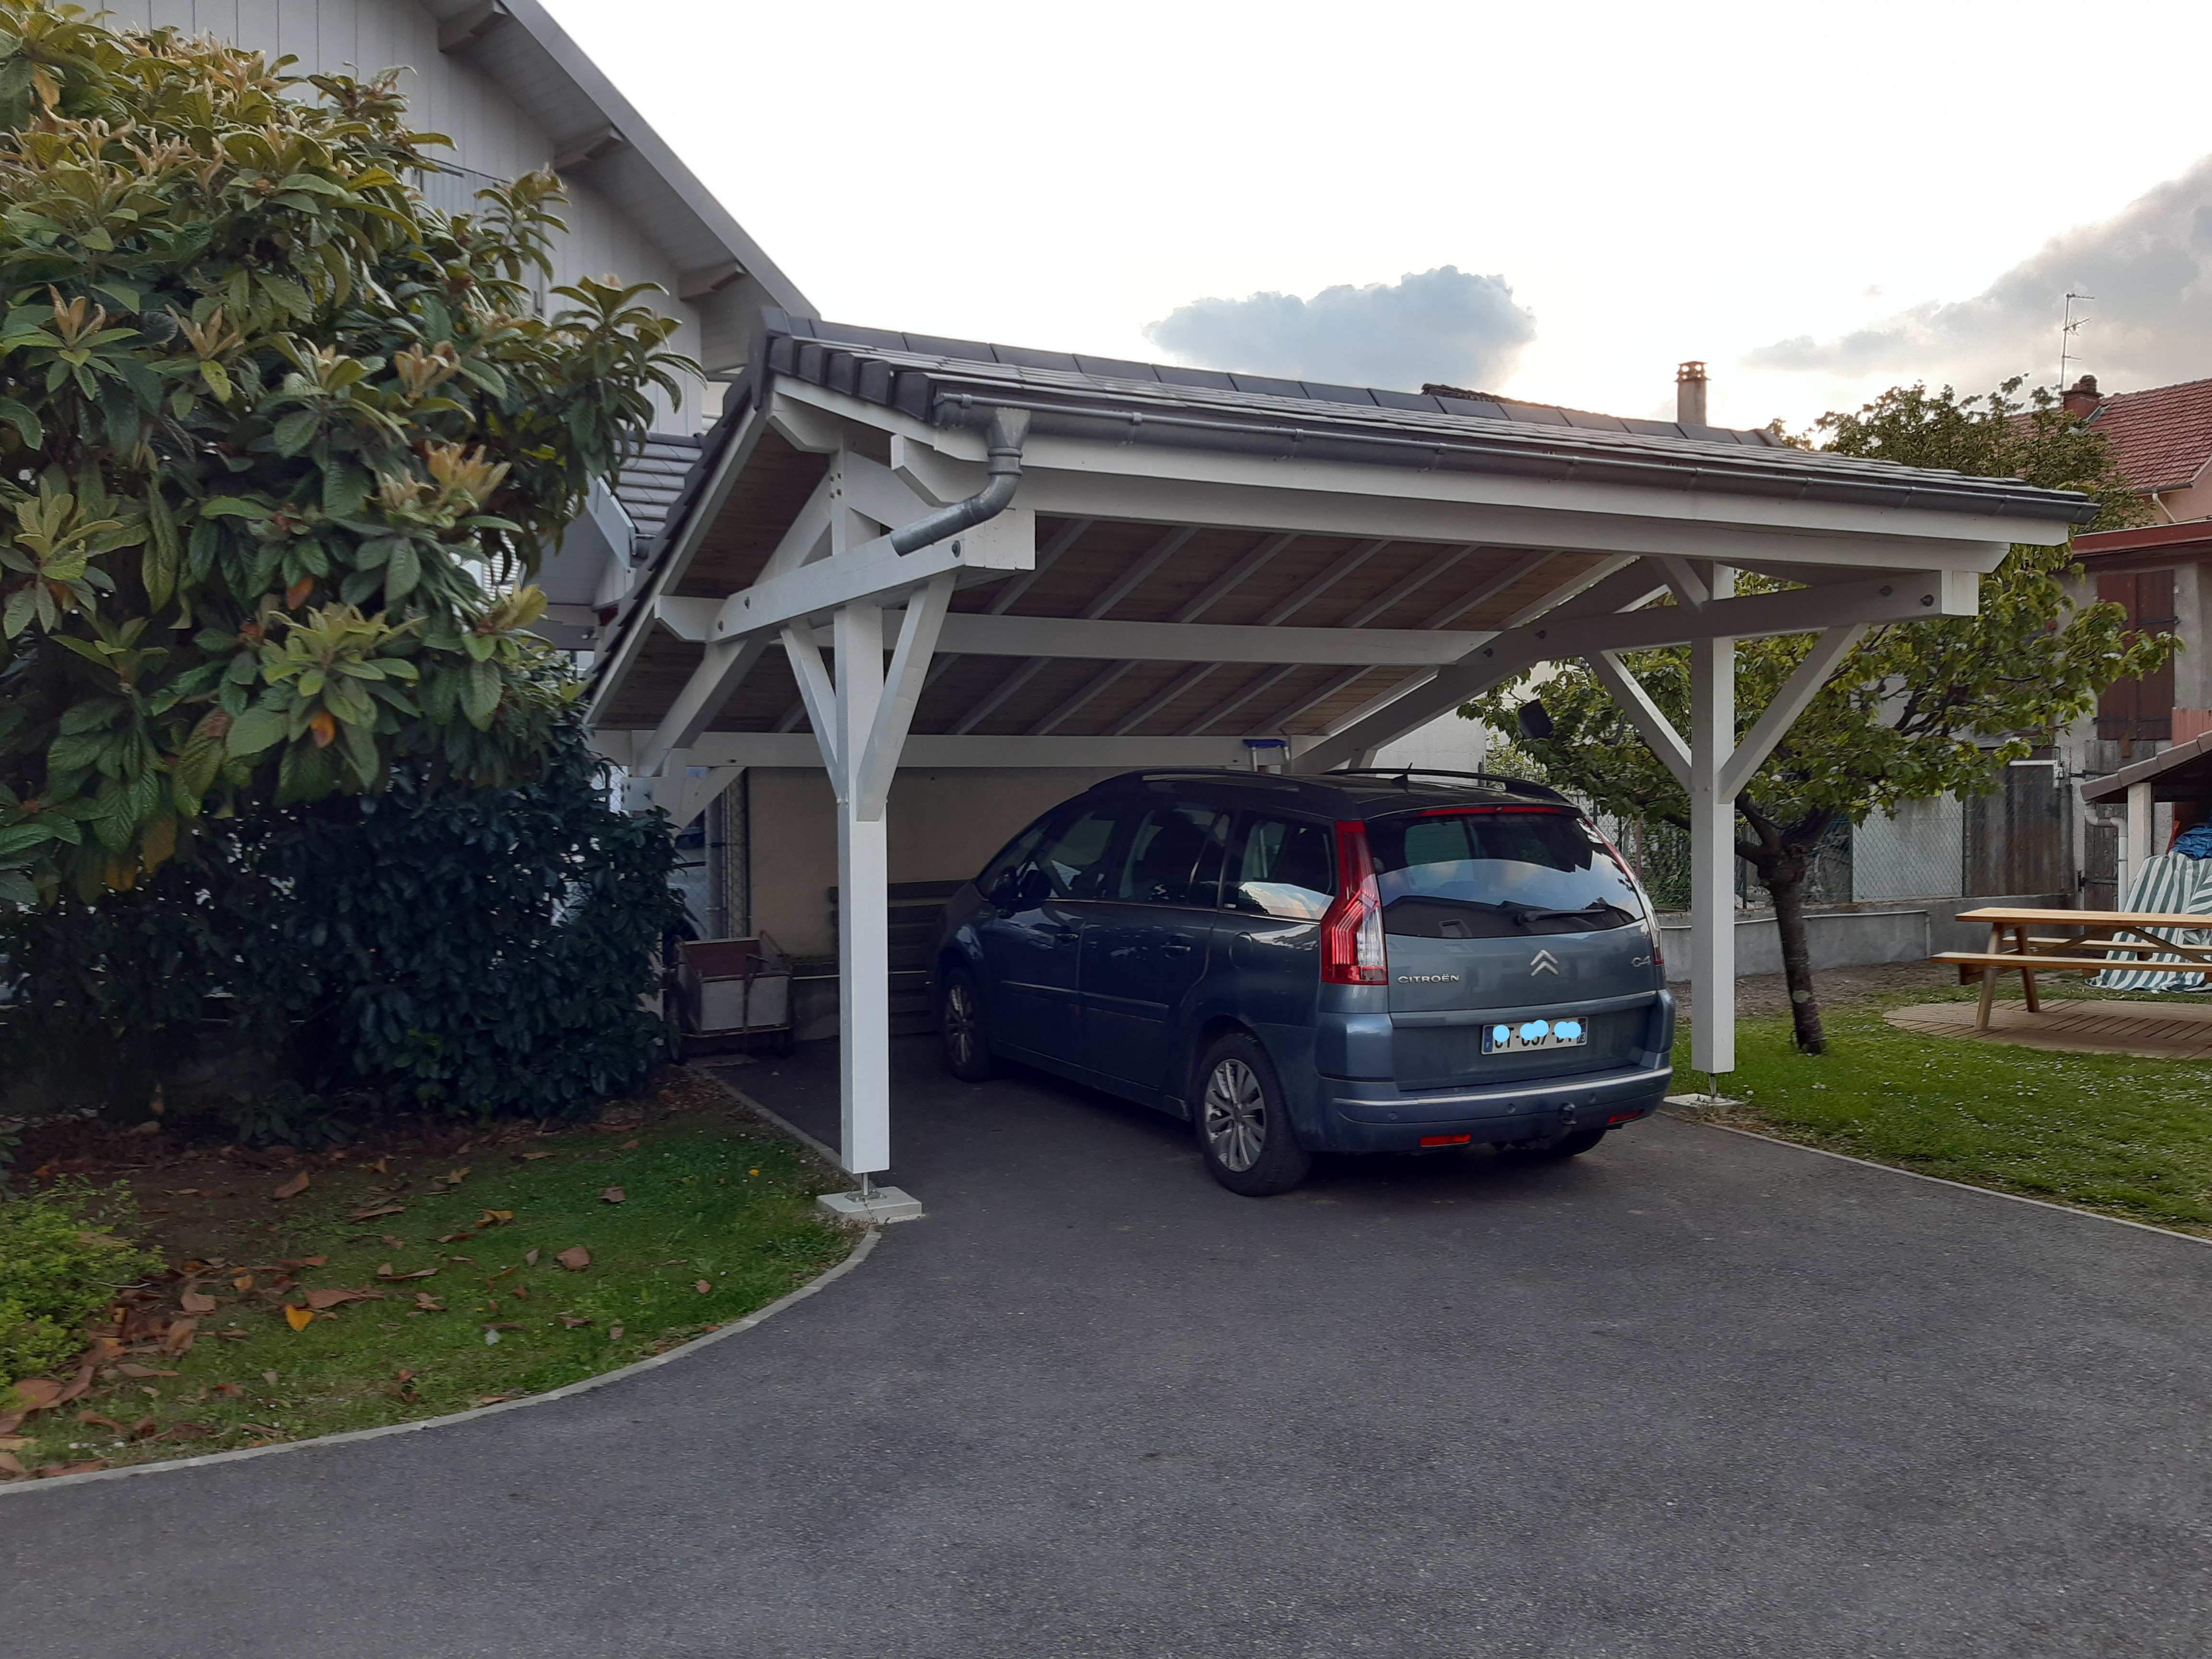 Carport 2 voitures Cholet 17 asymétrique - 27.85 m² non couvert